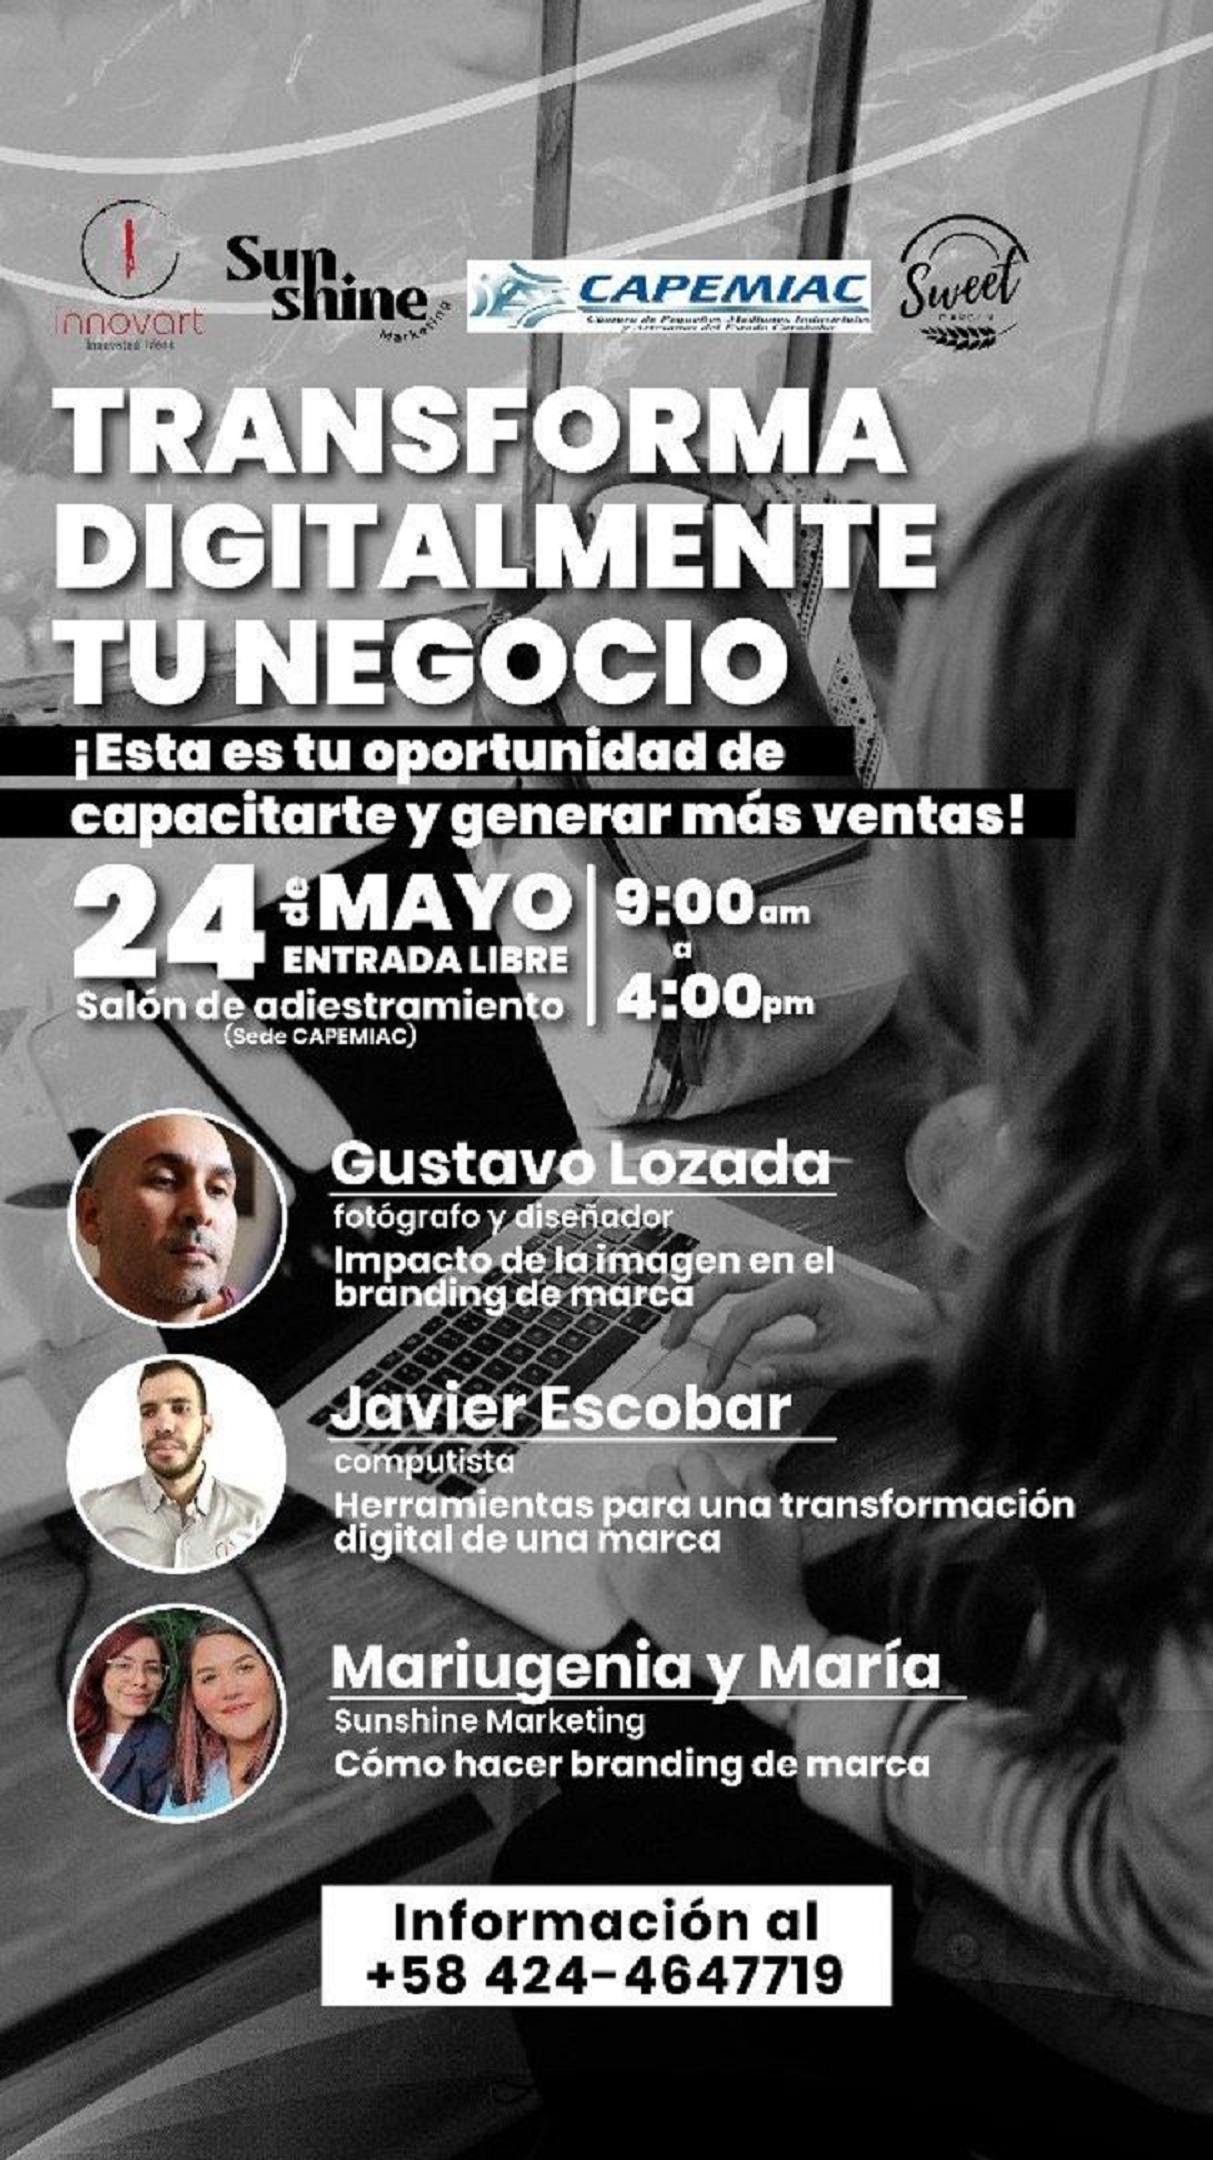 Capemiac acogerá conferencia de transformación digital empresarial este martes